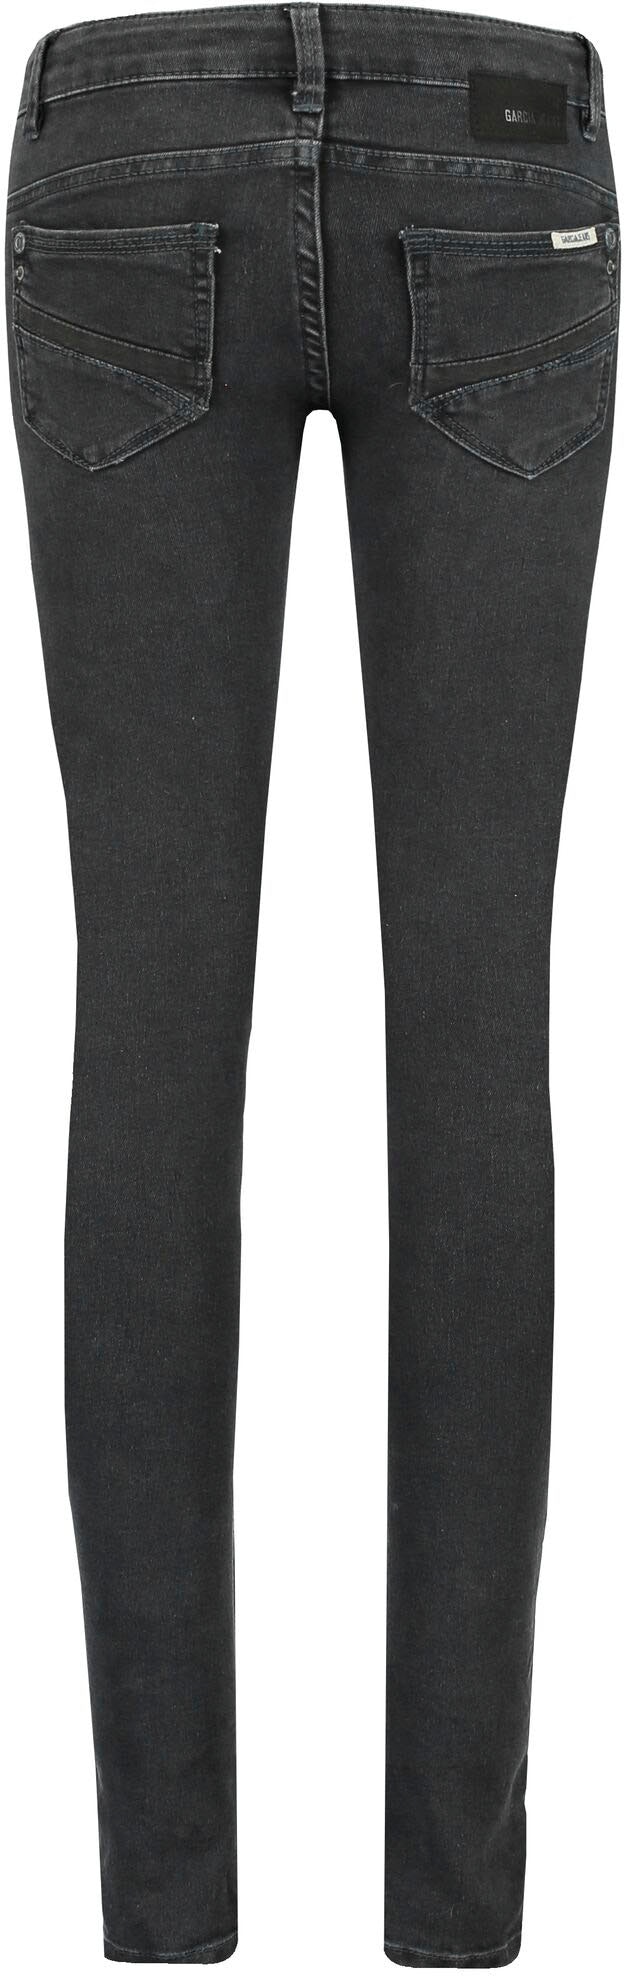 Garcia Stretch-Jeans »570 RIANNA SUPERSLIM« | günstig kaufen